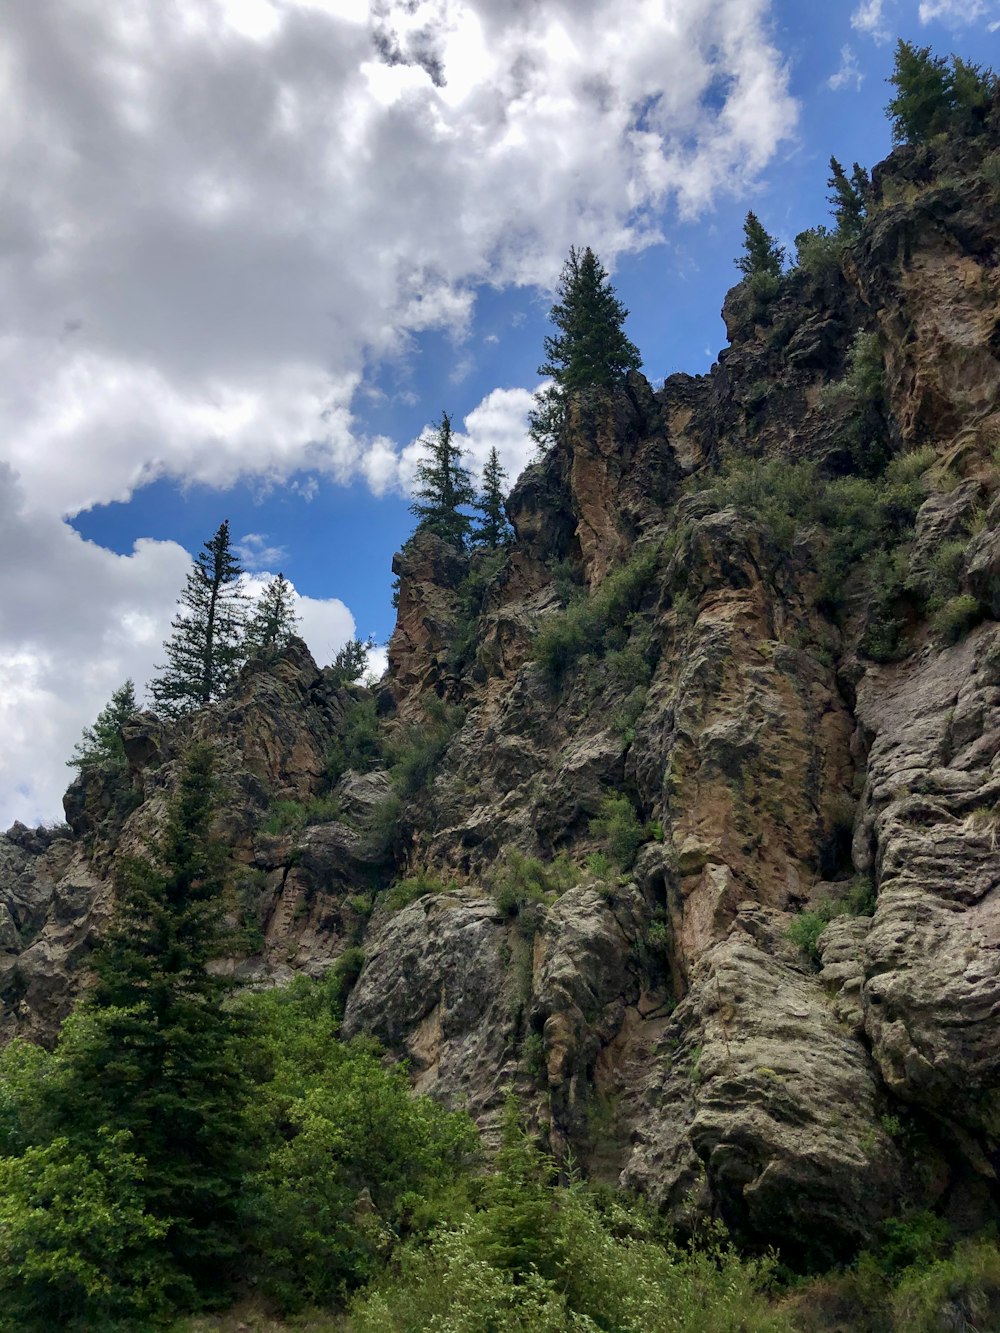 arbres verts sur la montagne rocheuse brune sous ciel nuageux bleu et blanc pendant la journée